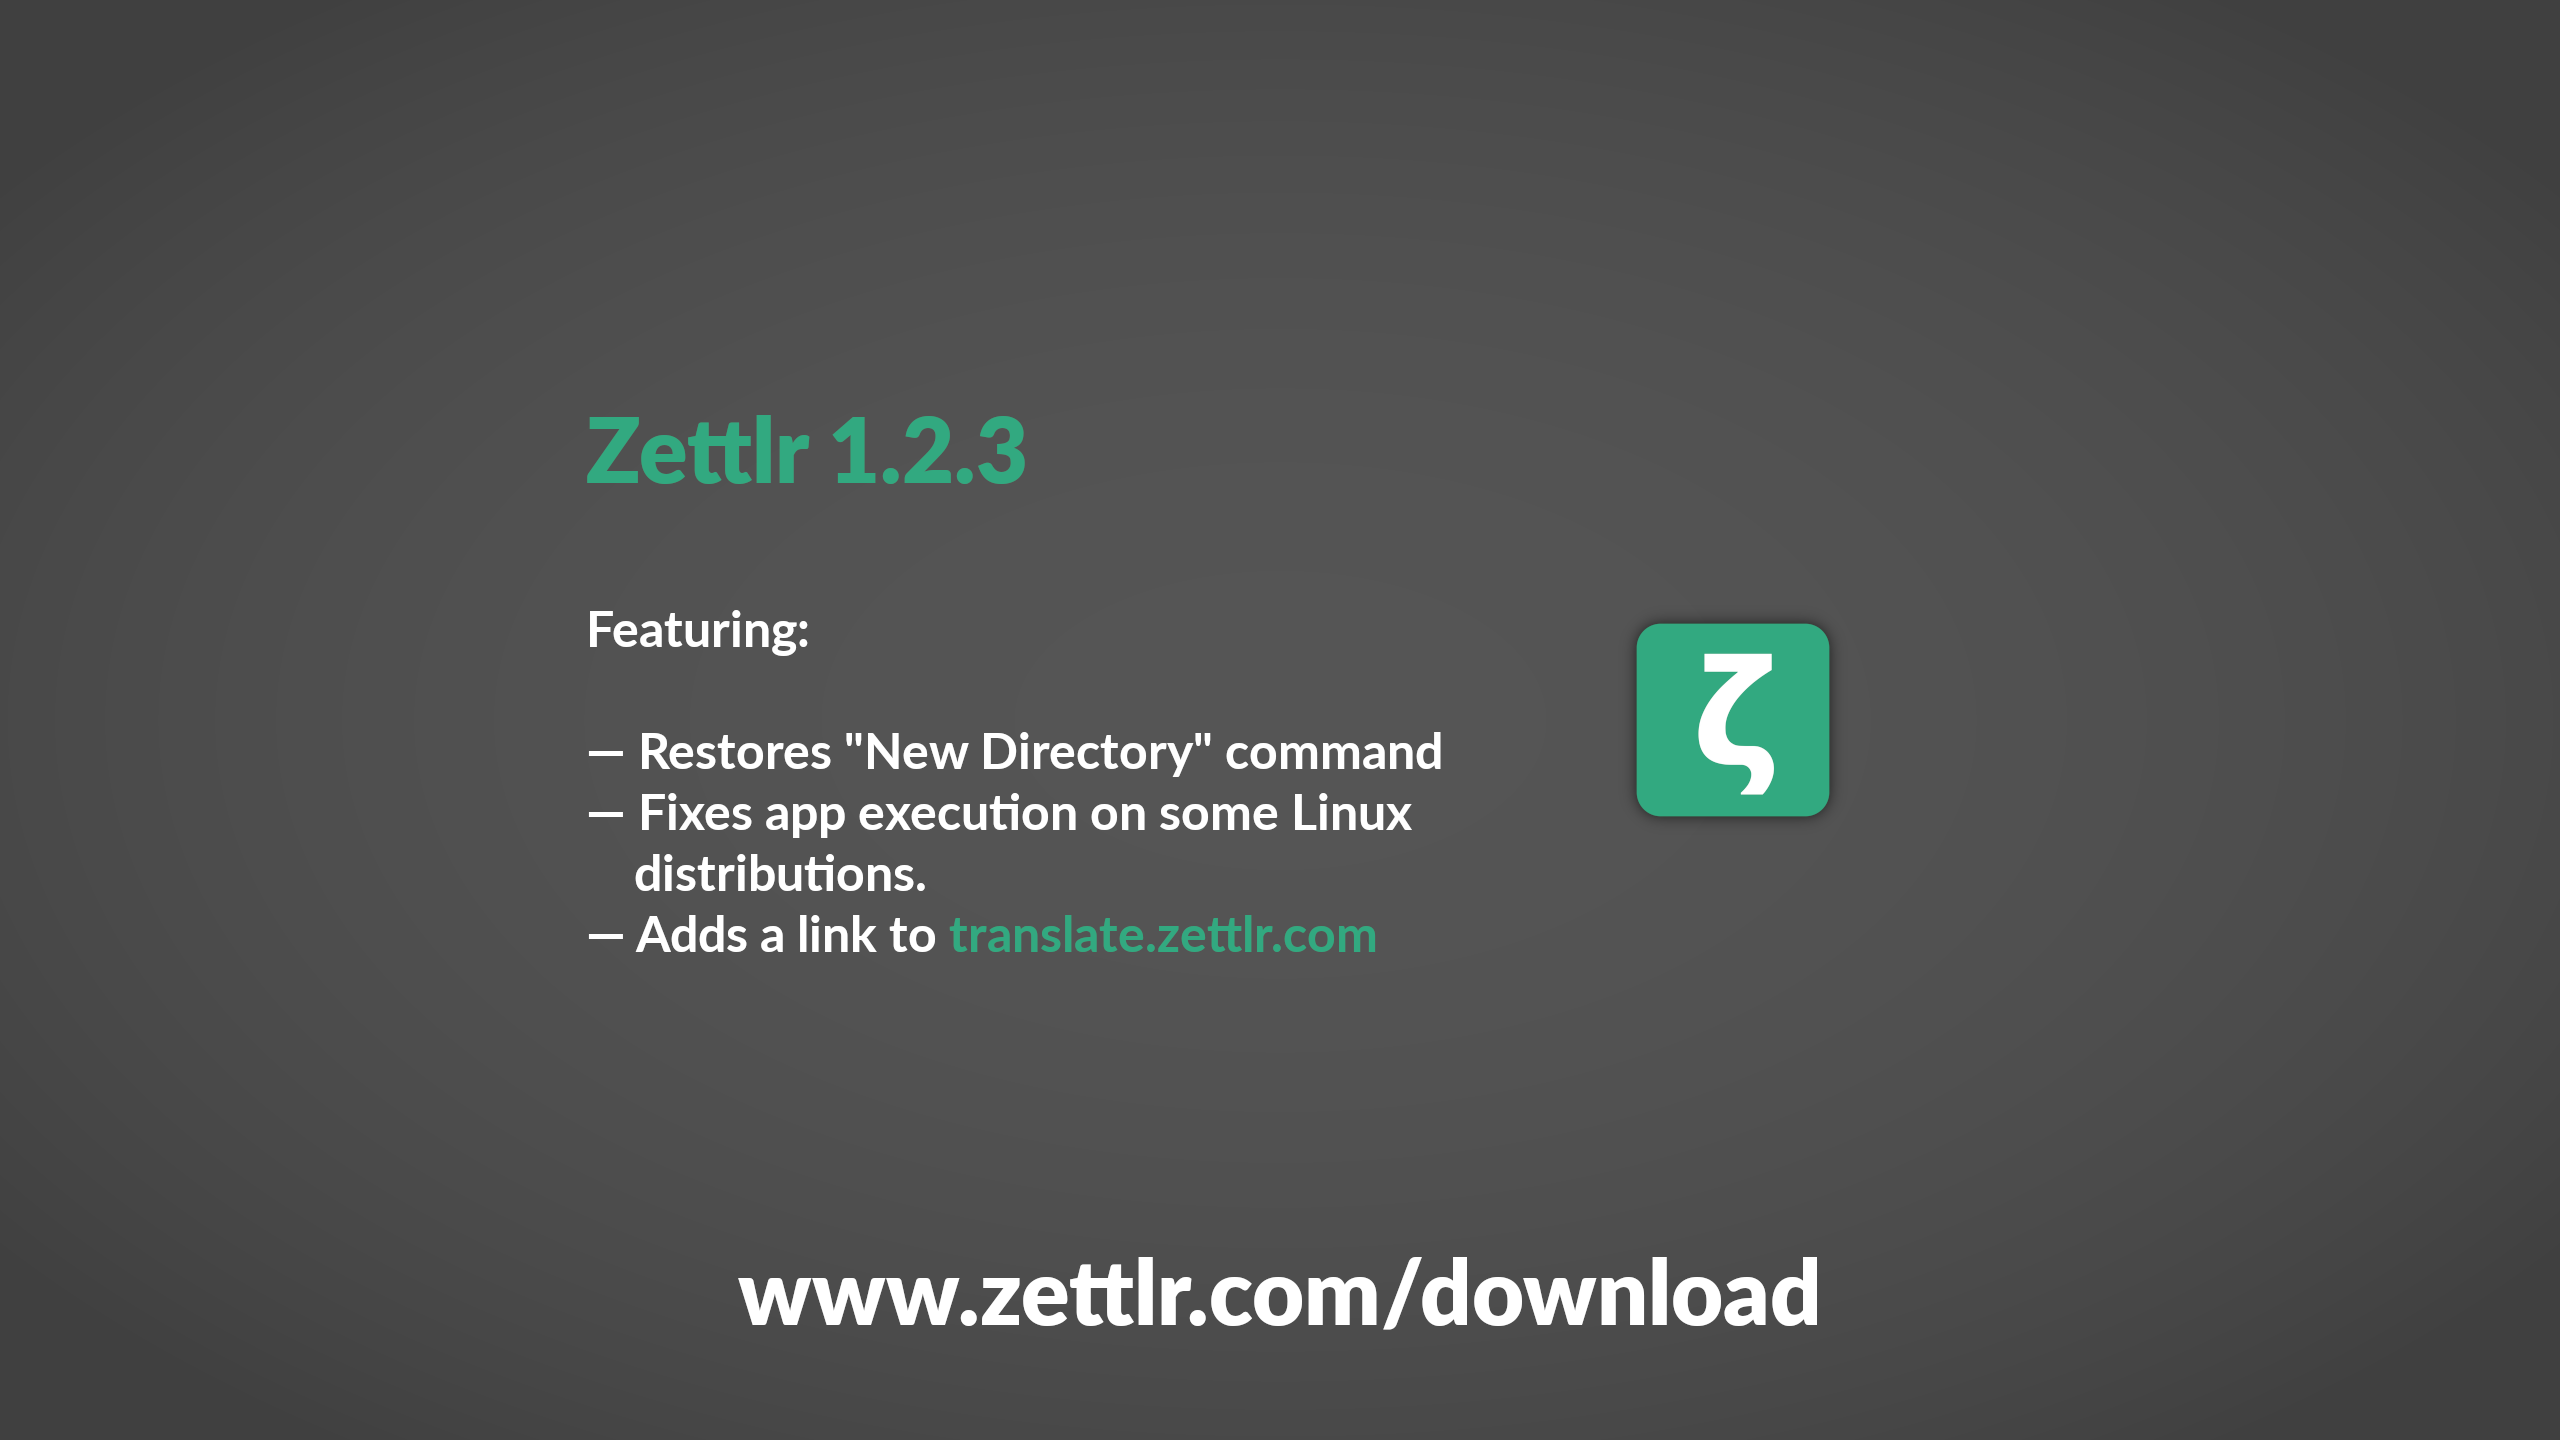 Zettlr 1.2.3 Released